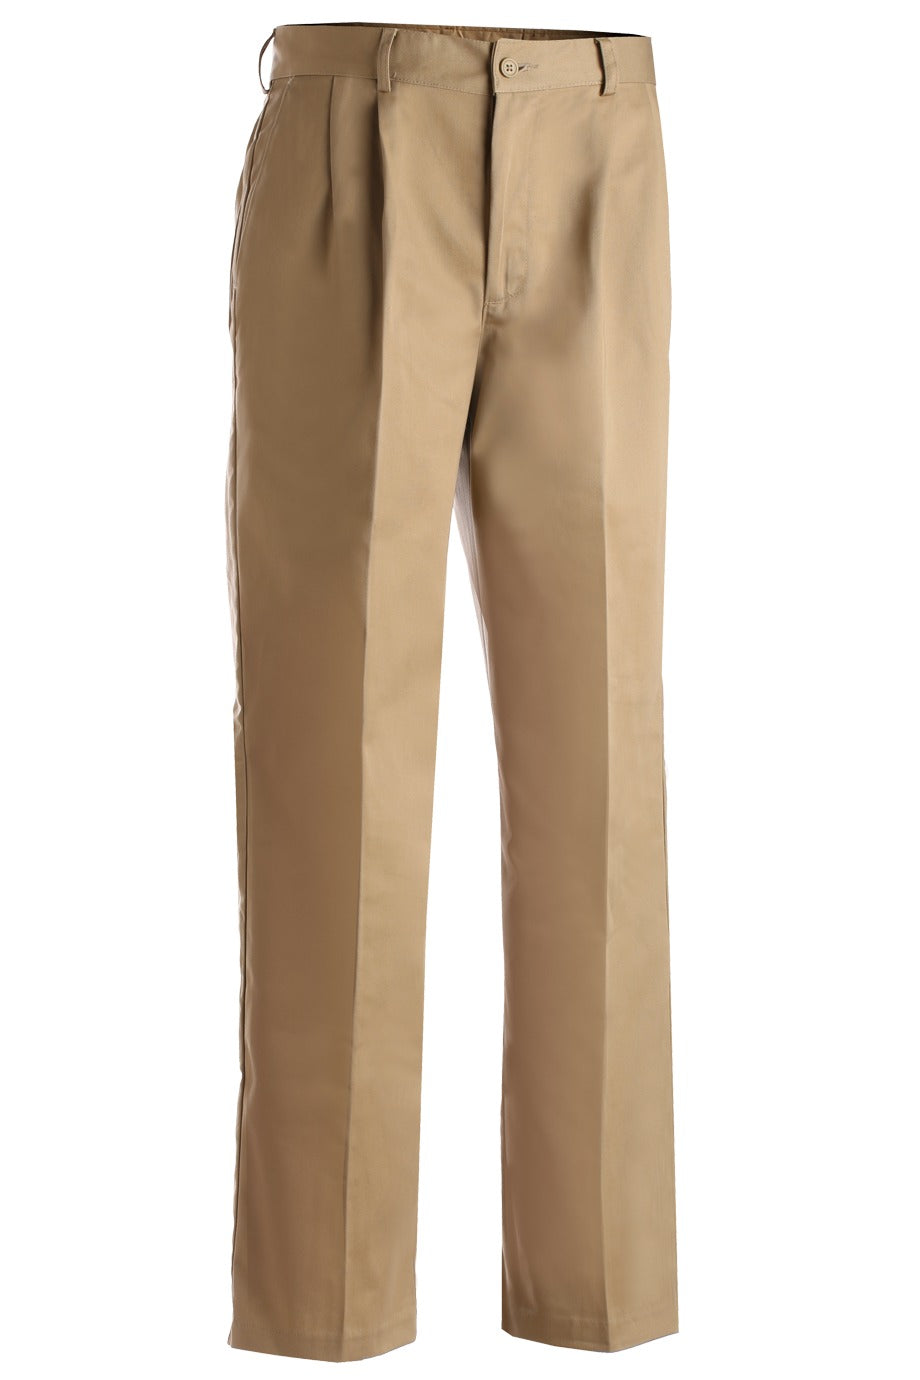 Khaki Brown Tilley Endurables Pants Size 12 – Prince Edward